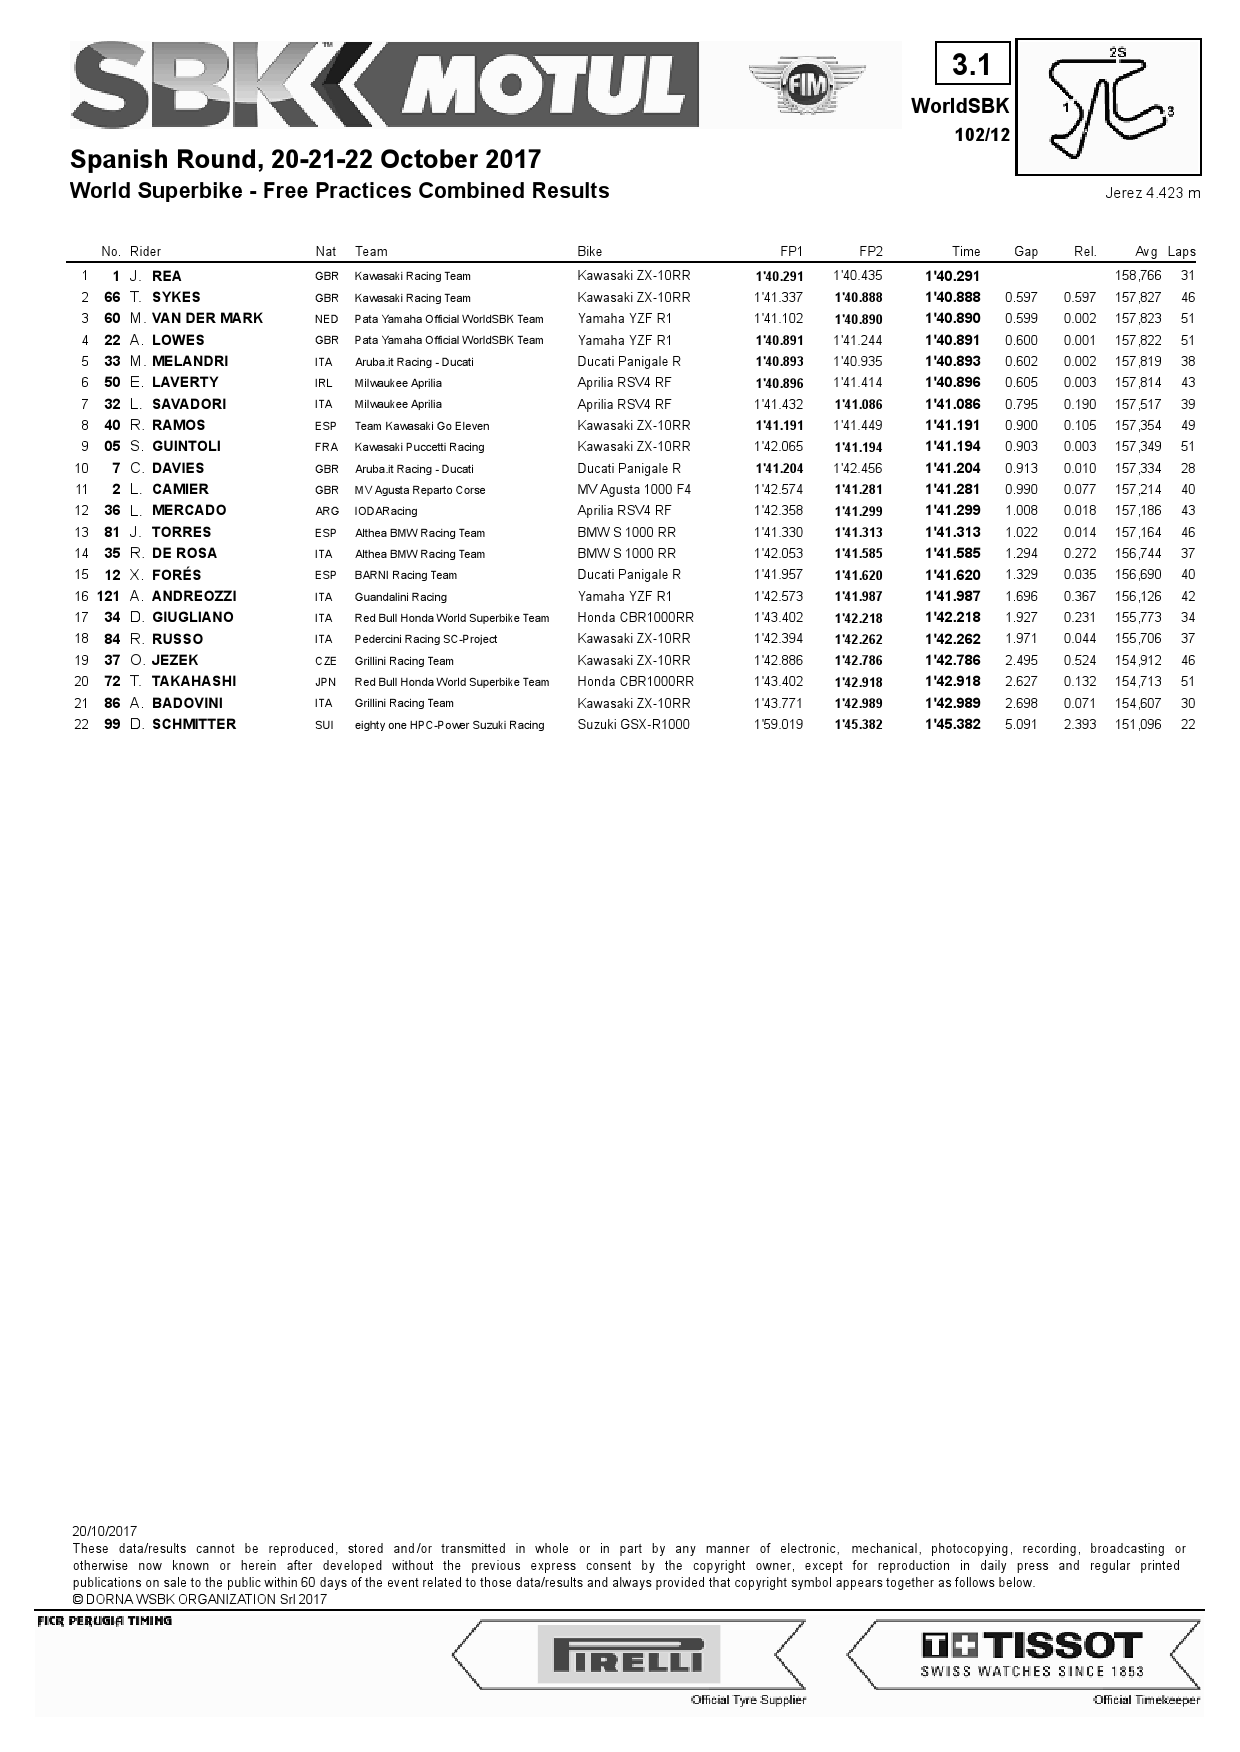 Комбинированные результаты FP1+FP2, Circuito de Jerez, WSBK